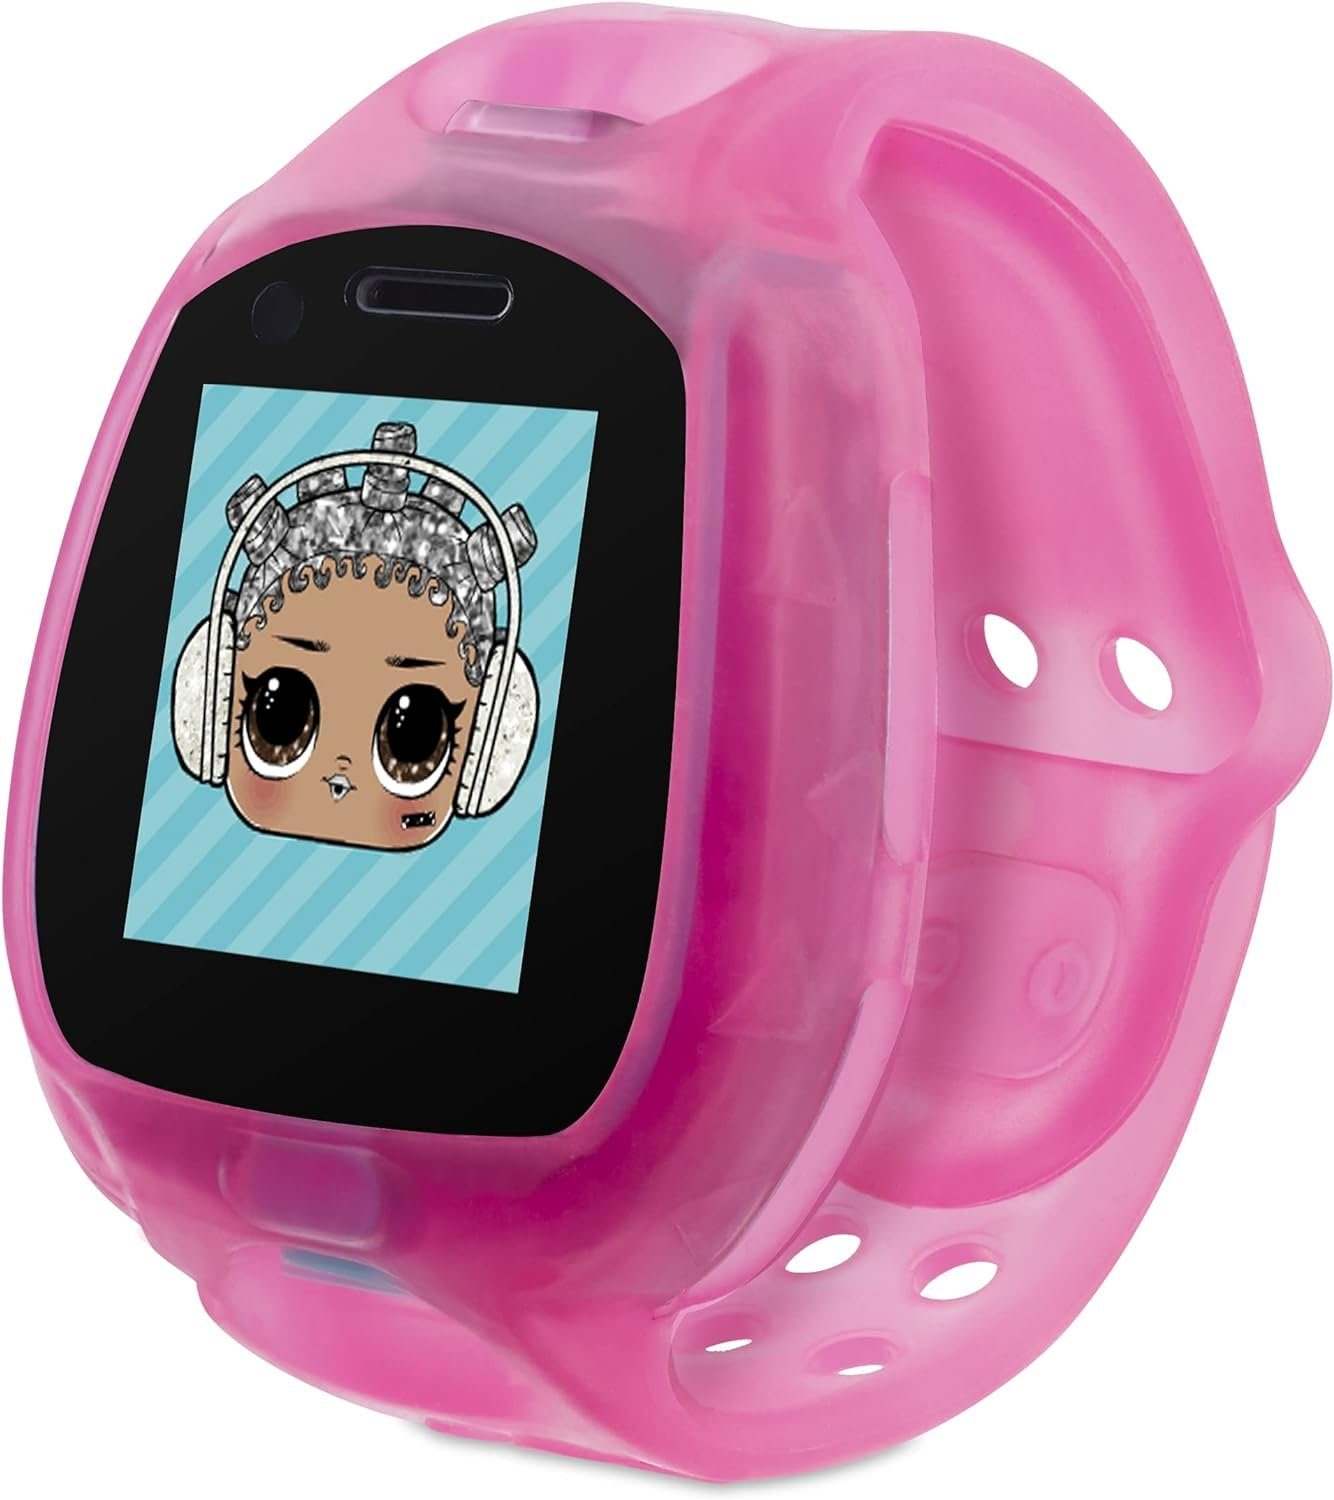 L.O.L. SURPRISE! Mit Kamera 2.0 Kinder Smartwatch, mit Spielen, verbesserter Grafik, lustigen Ausdrücken, Schrittzähler